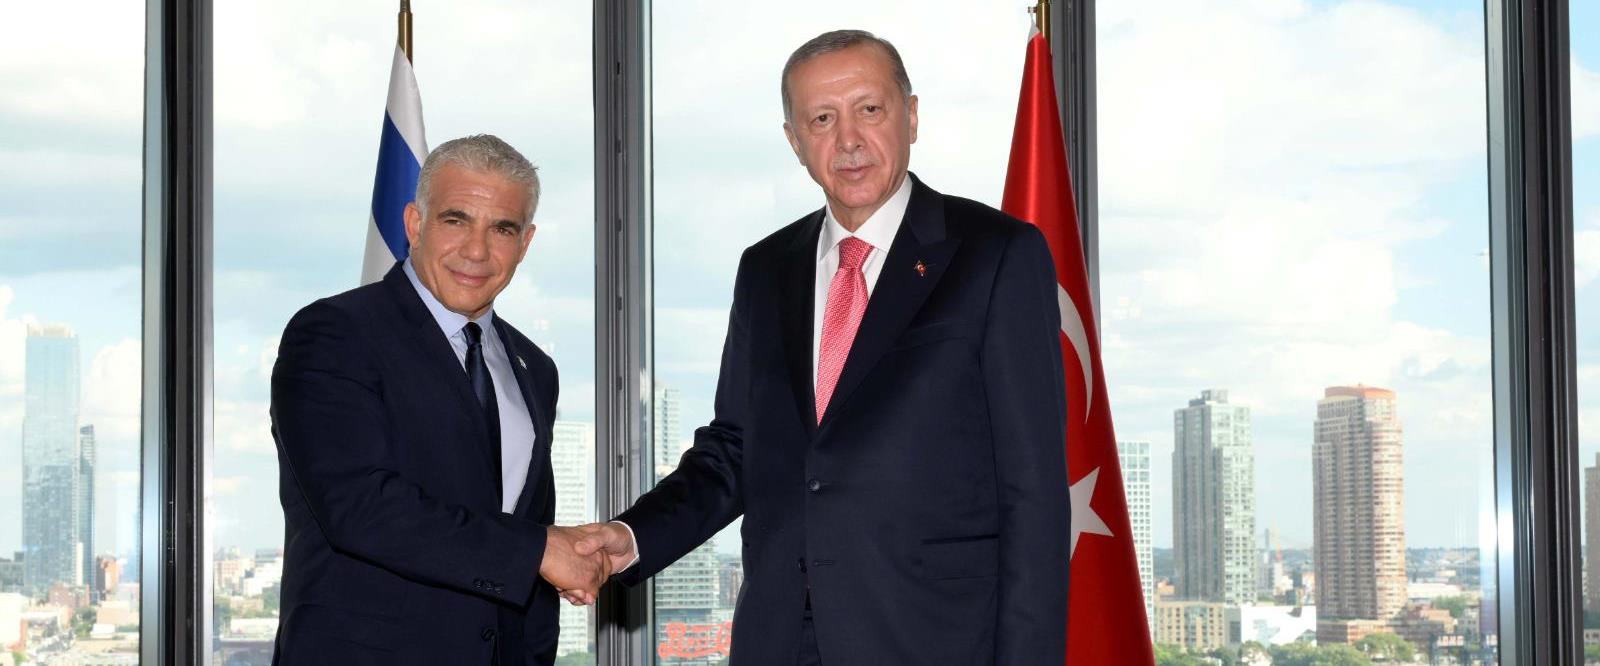 לפיד בפגישתו עם נשיא טורקיה ארדואן